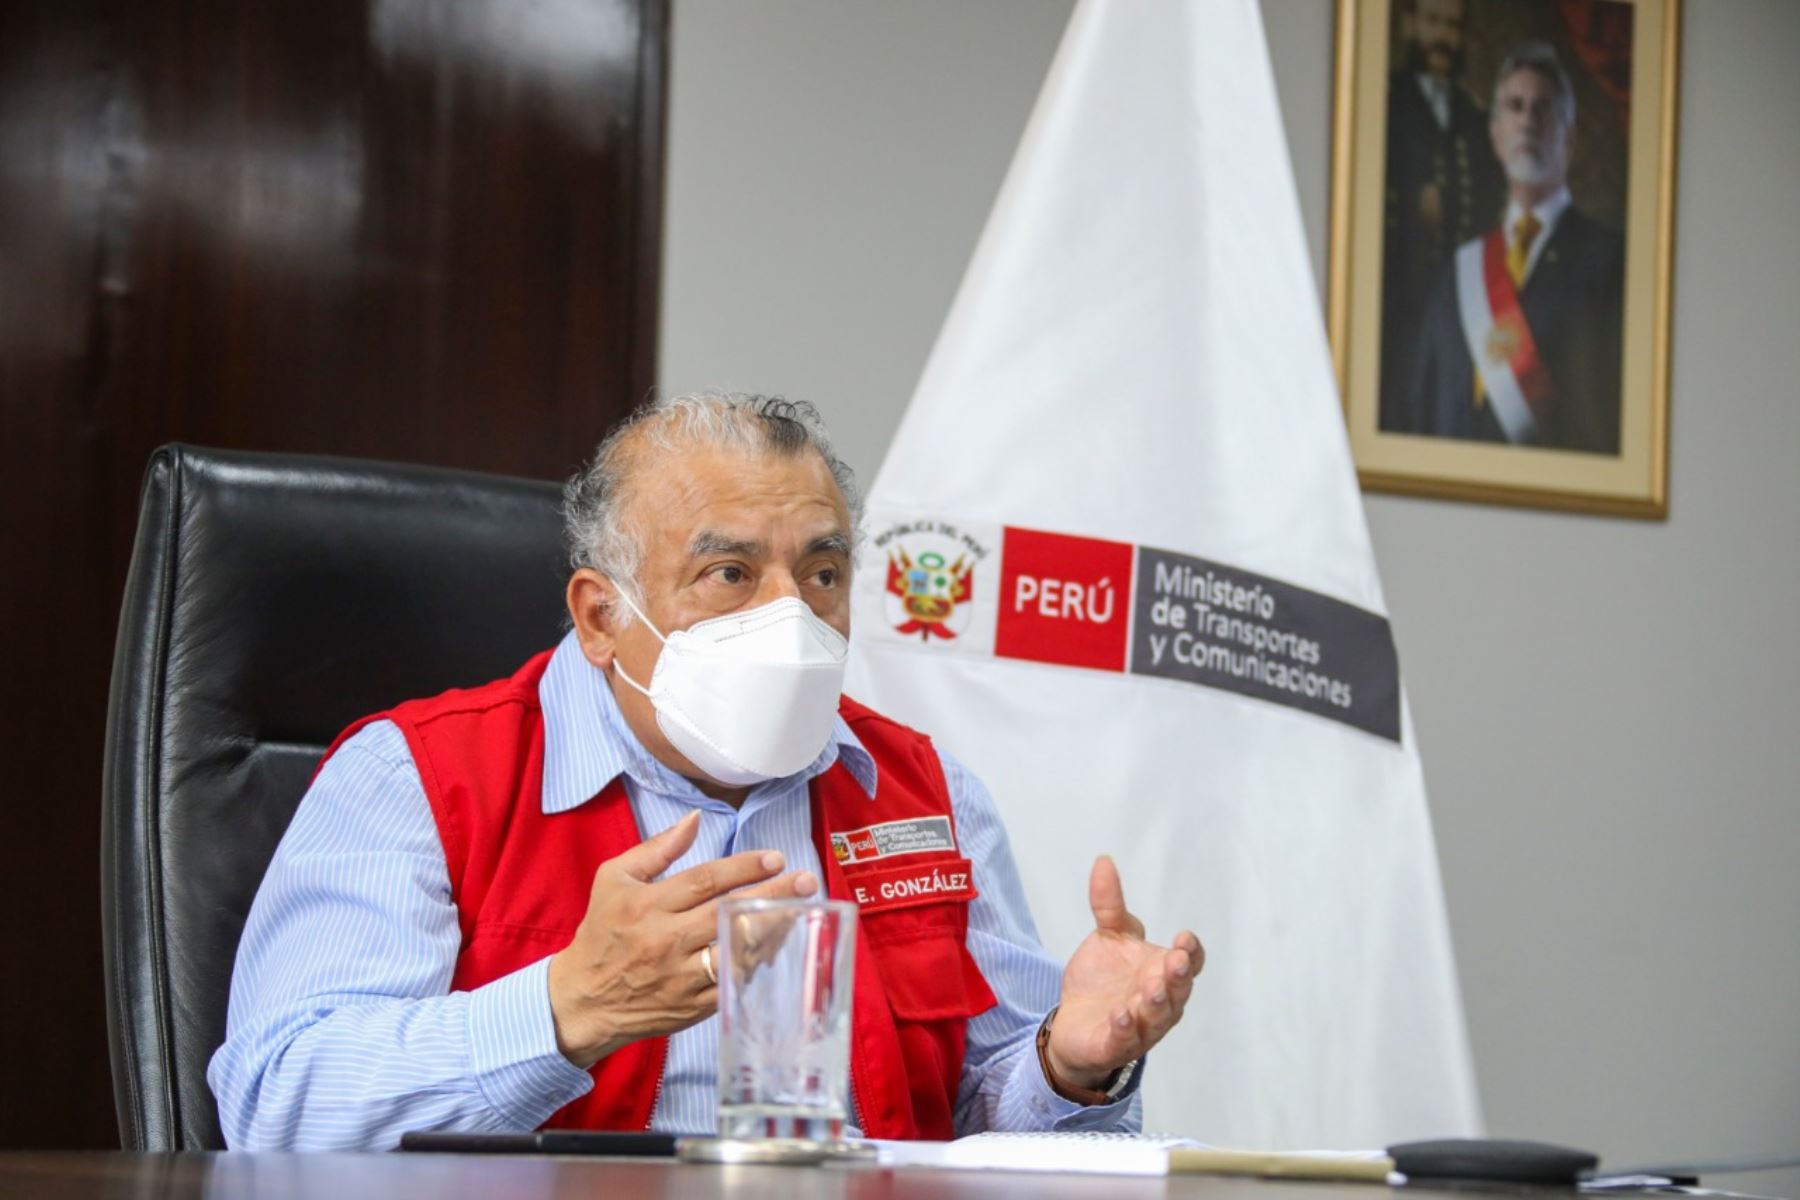 El ministro de Transportes y Comunicaciones, Eduardo González, también se refirió al proyecto de ley sobre chatarreo y modernización del parque automotor. Foto: ANDINA/MTC